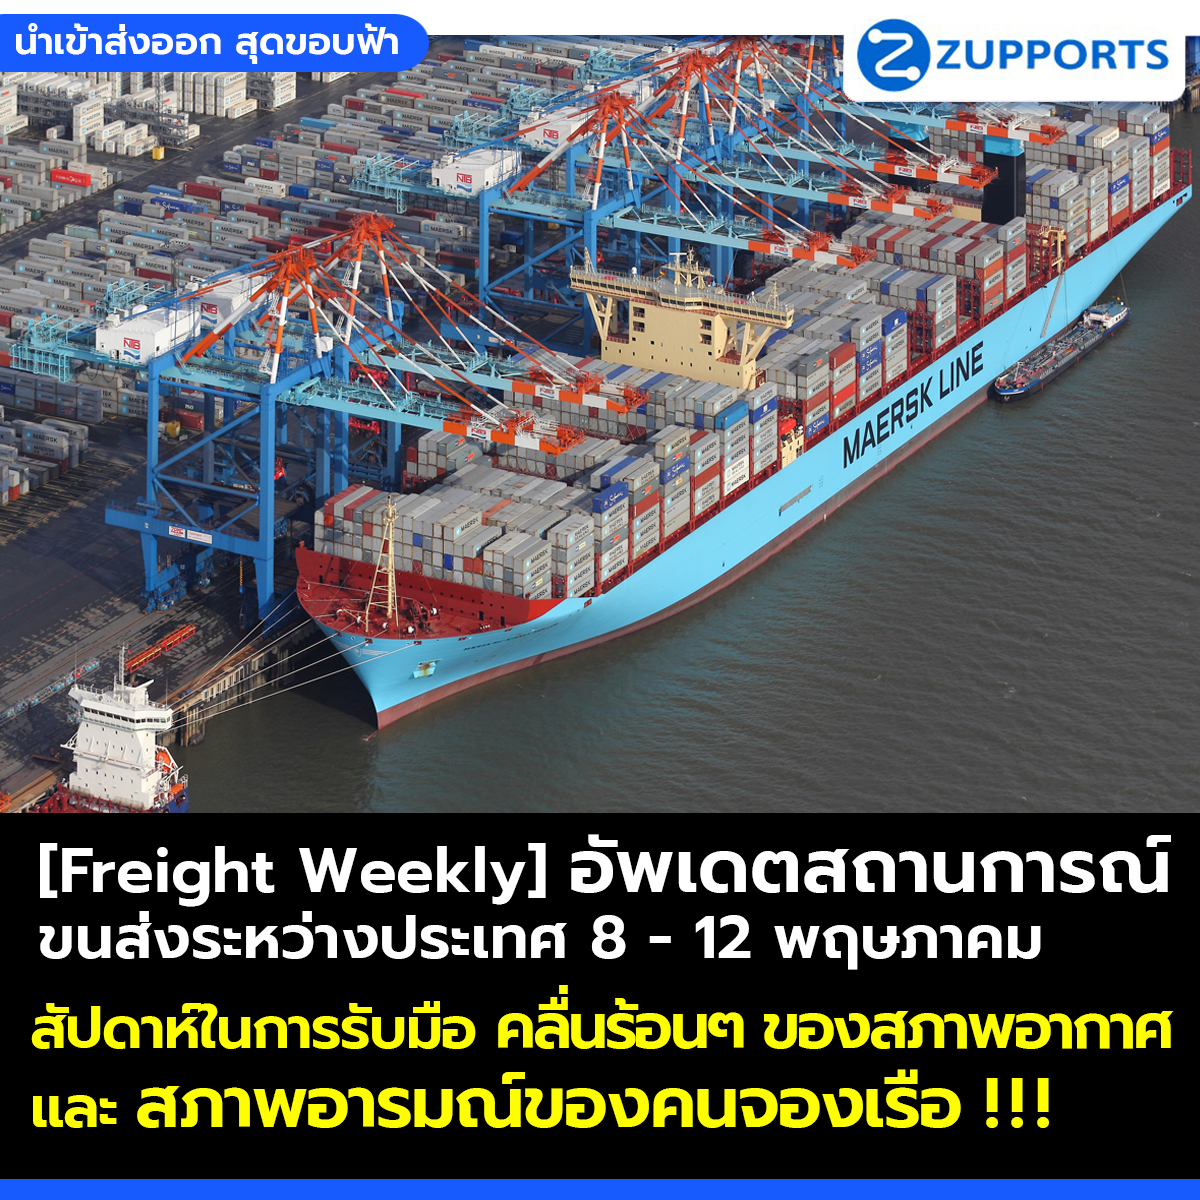 [Freight Weekly] : อัพเดตสถานการณ์ขนส่งสินค้าระหว่างประเทศ ประจำวันที่ 8- 12 พฤษภาคม กับ ZUPPORTS !!! สัปดาห์ในการรับมือ คลื่นร้อนๆ ของสภาพอากาศและ สภาพอารมณ์ของคนจองเรือ !!!